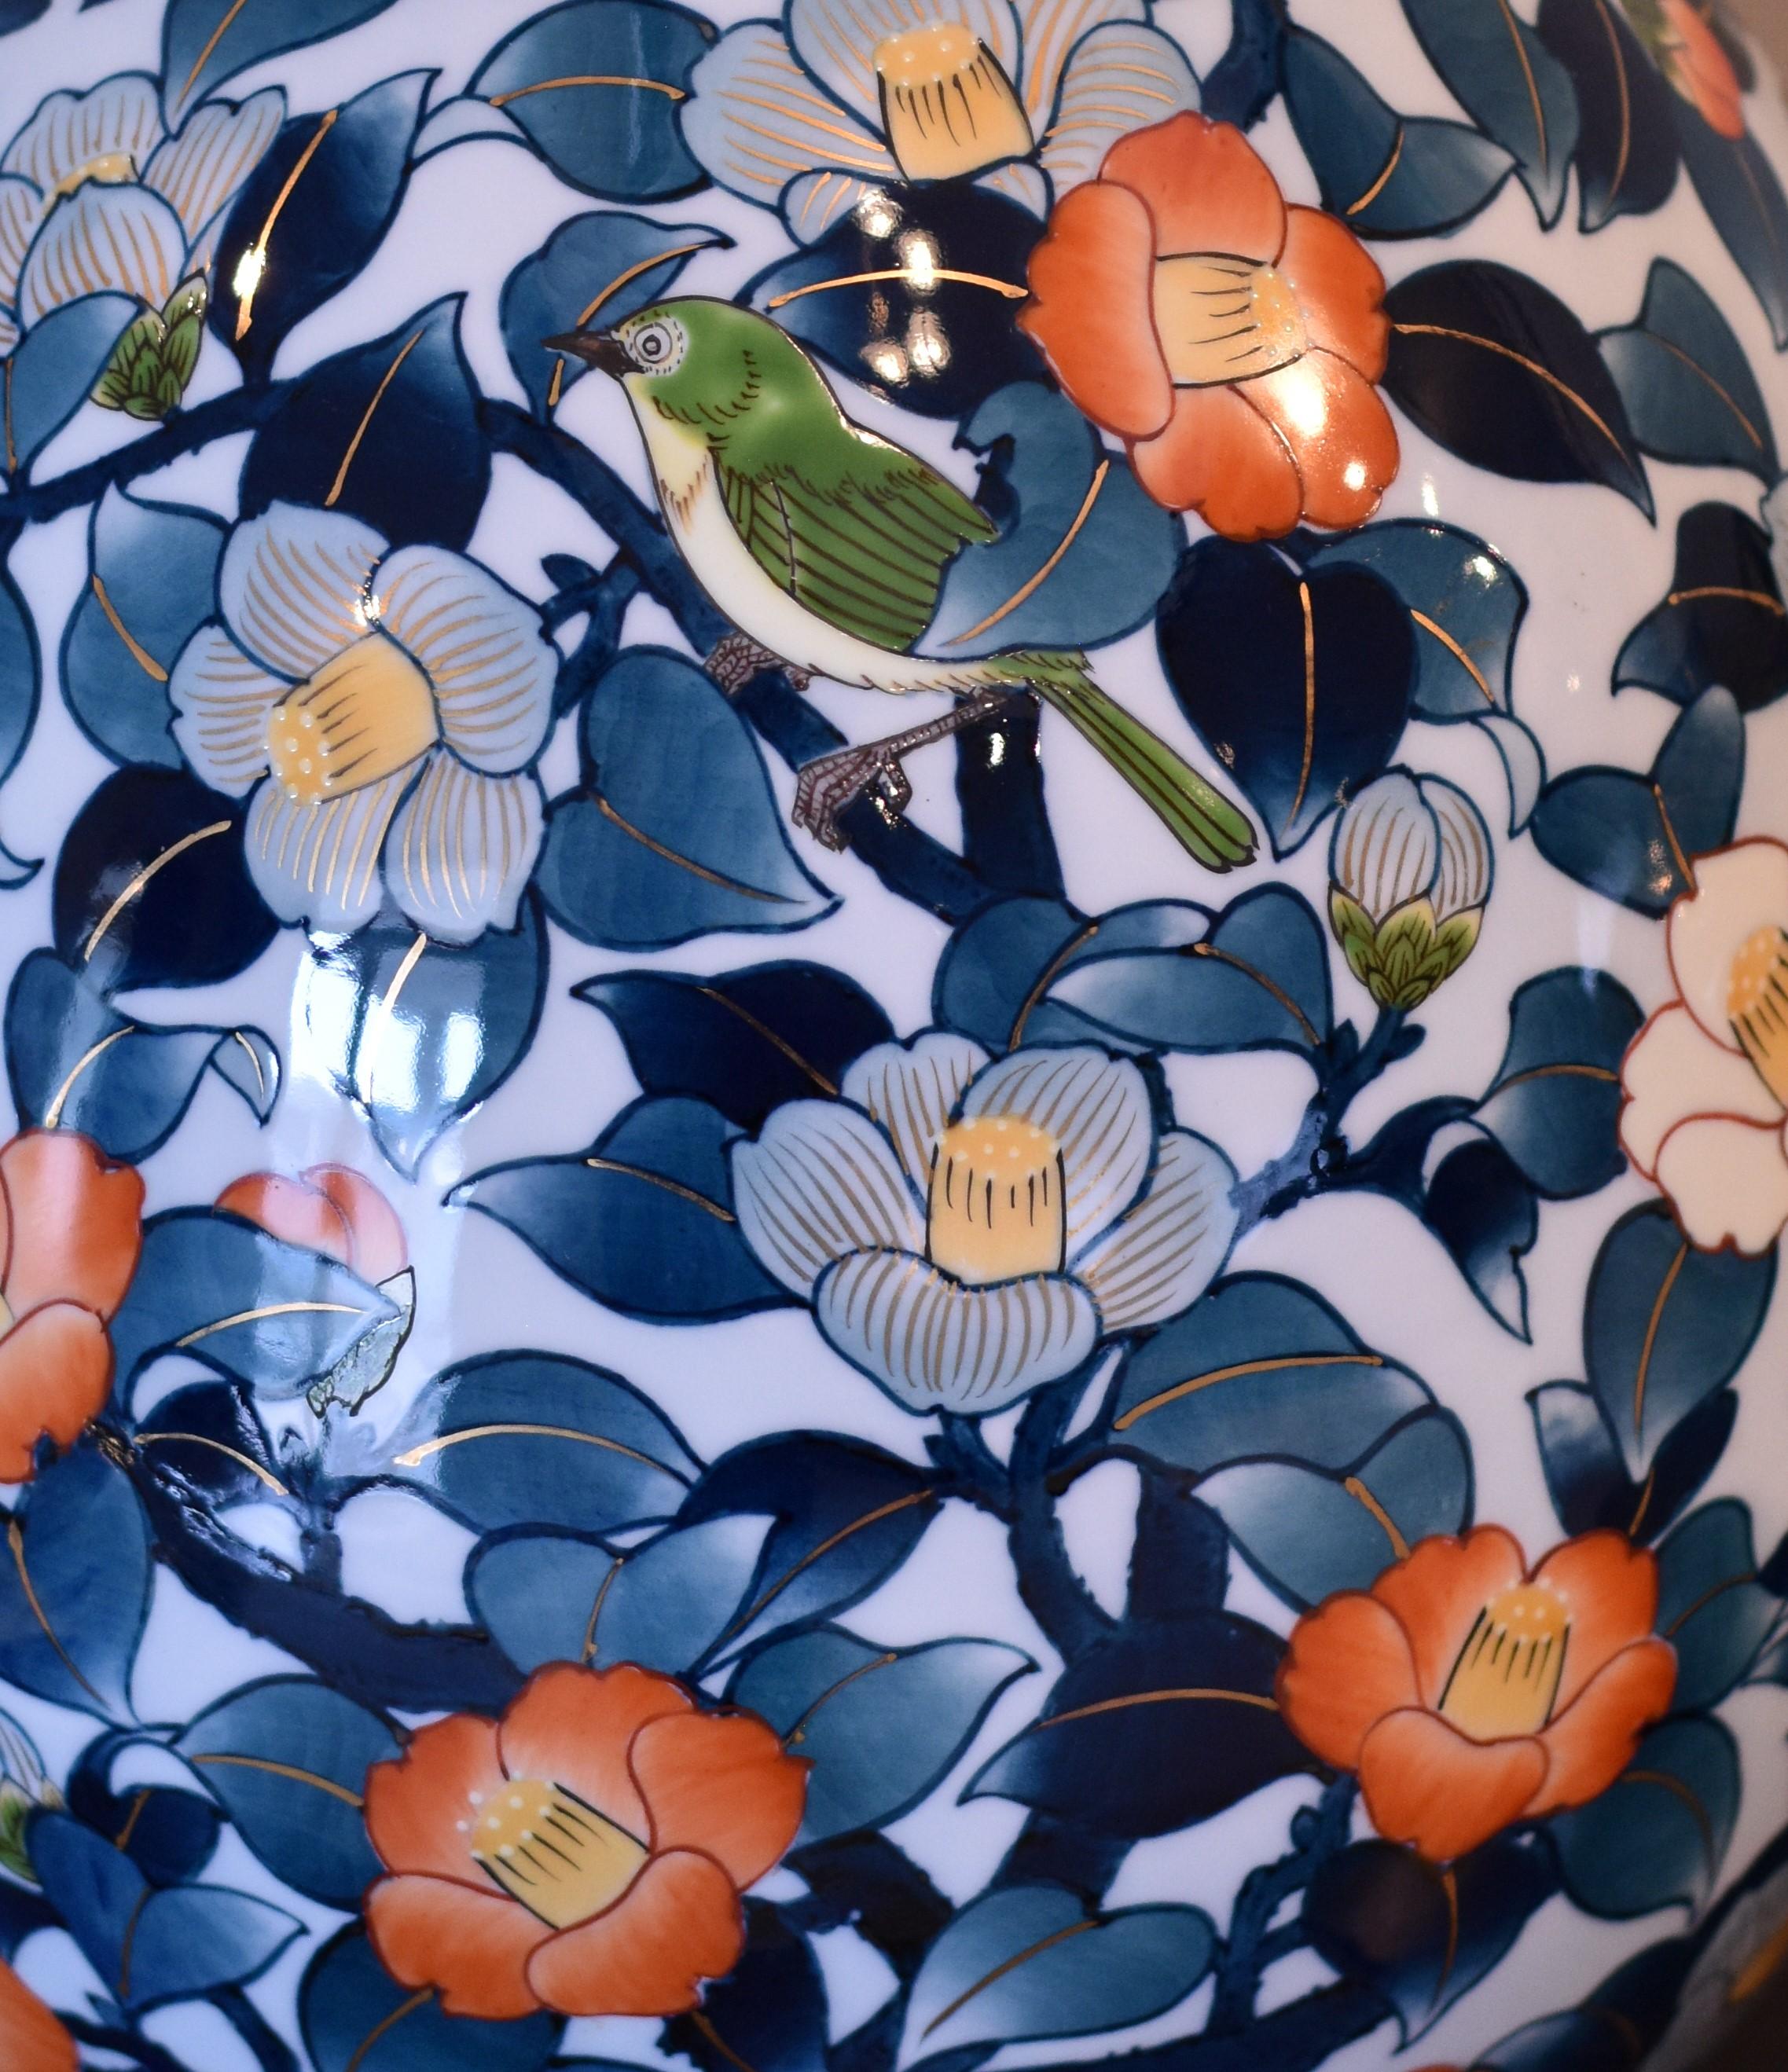 Exquisite zeitgenössische japanische Porzellanvase in Museumsqualität, atemberaubend handbemalt in Blau, Grün und Orange auf einem anmutig geformten reinweißen Porzellankörper, ein signiertes Meisterwerk eines hochgelobten, preisgekrönten